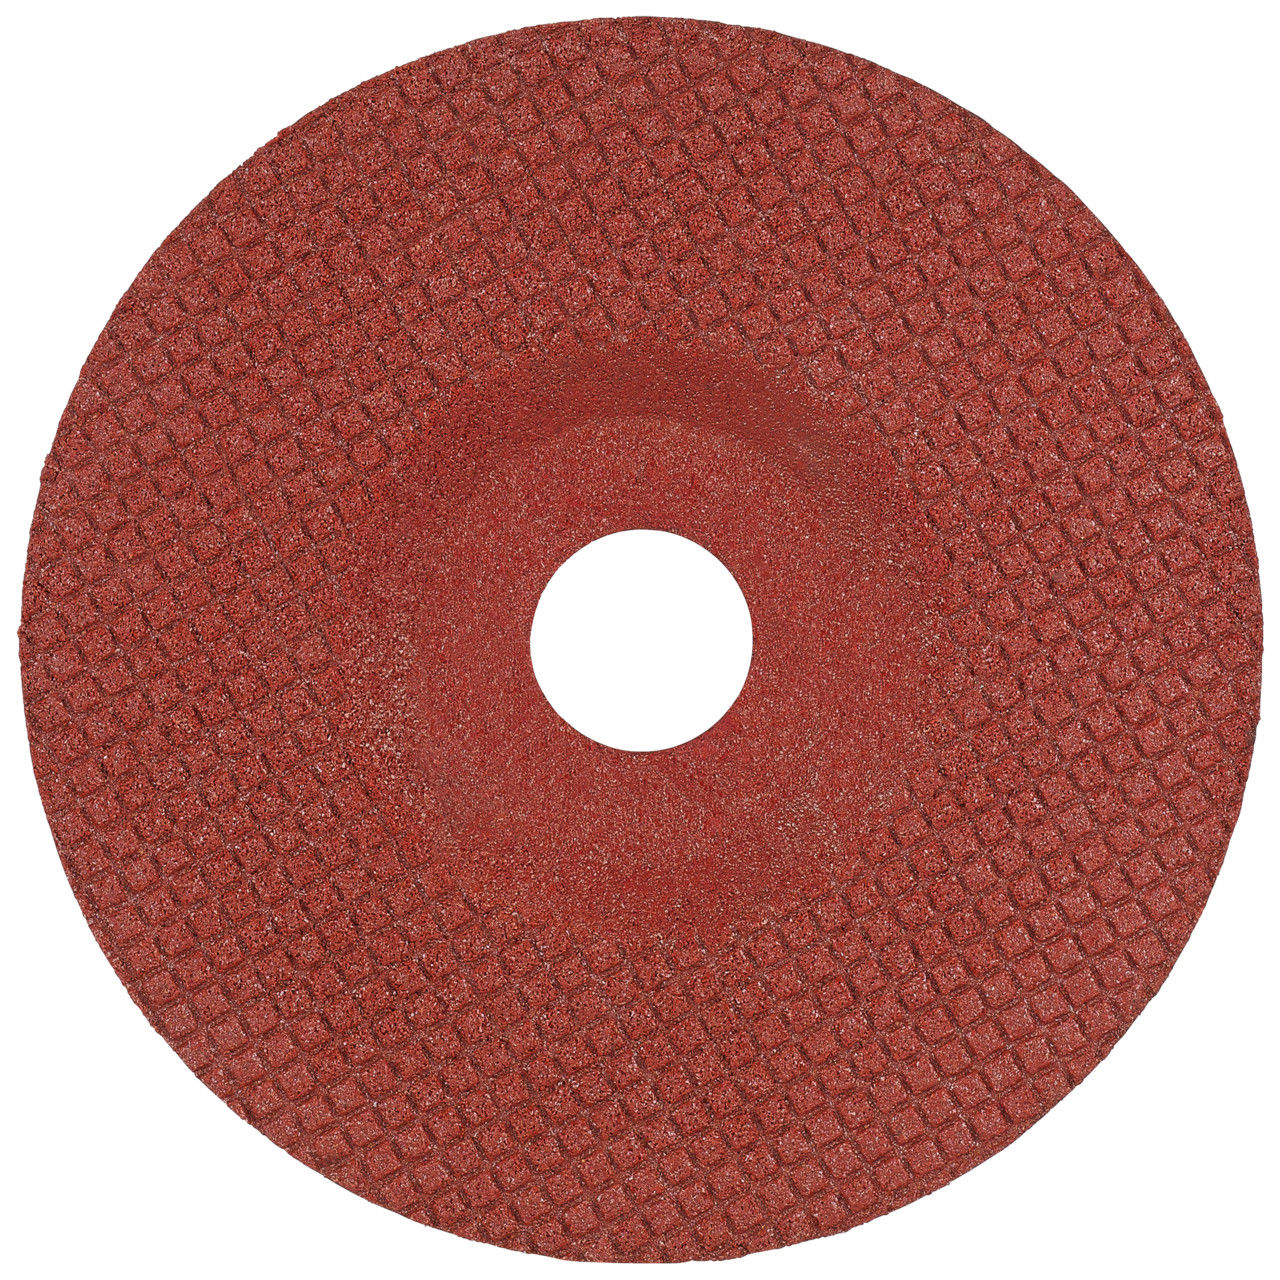 Tyrolit Disque abrasif DxH 125x22,23 TOUCH pour l'acier inoxydable et les métaux non ferreux, forme : 29T - version déportée, art. 236319